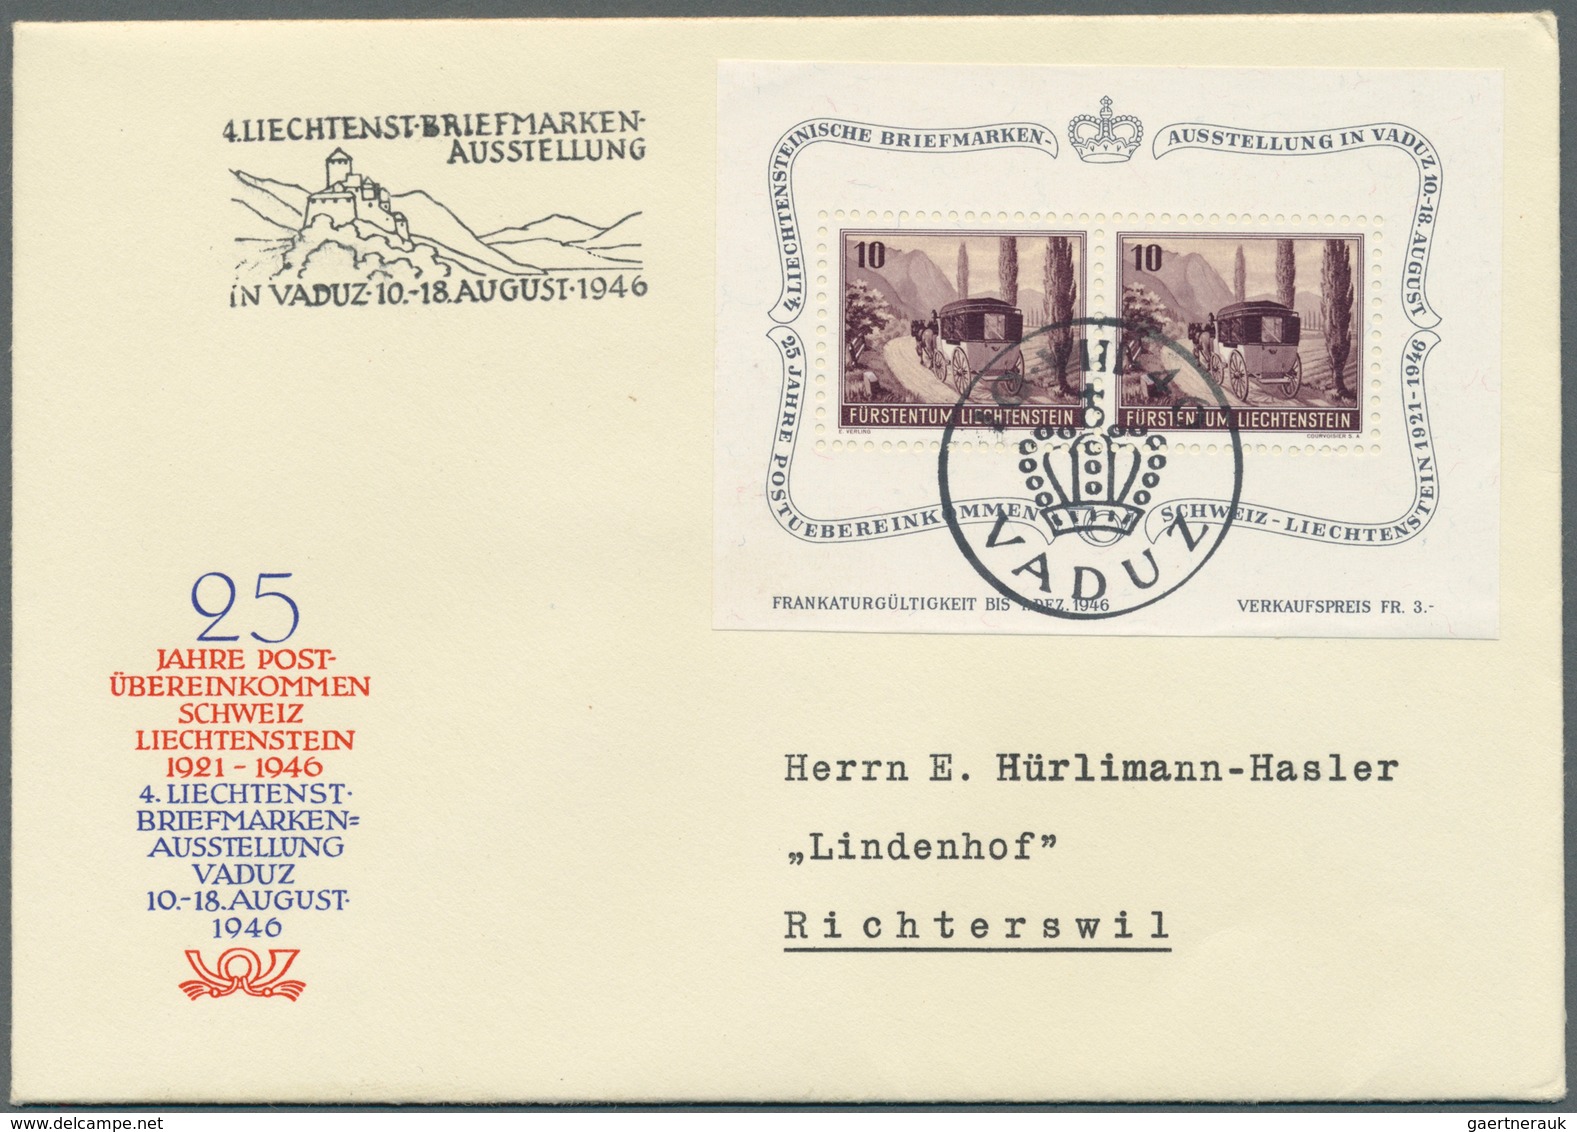 27209 Liechtenstein: 1936/1958, Lot von zehn Briefen/Karten, dabei MiNr. 149/50 auf Zeppelin-FDC, Bl. 2 au